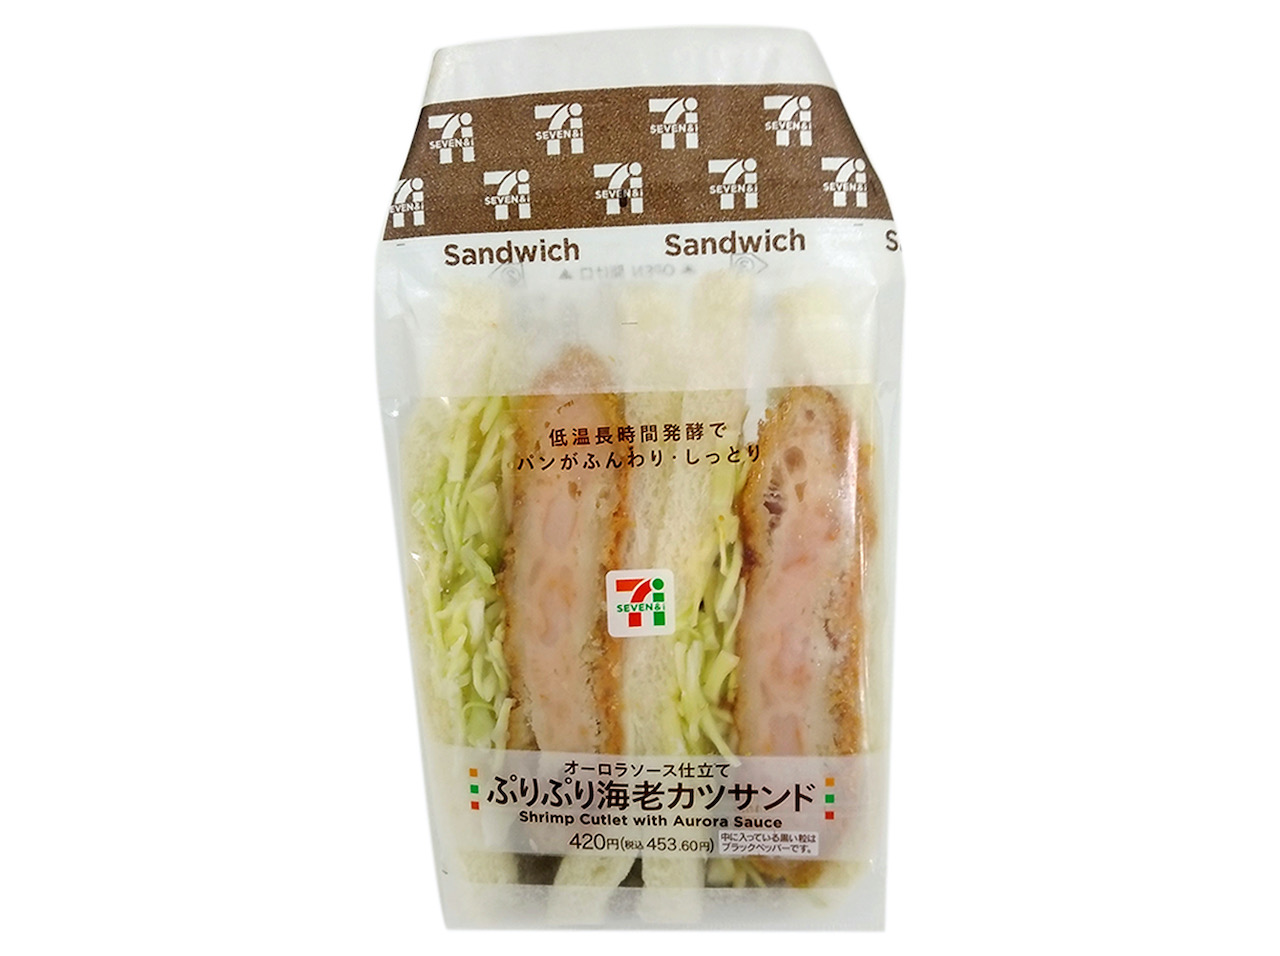 ぷりぷり食感で存在感のあるエビの剥き身を使用した海老カツと食感の良いキャベツを組み合わせた食べ応えのあるサンドイッチです。